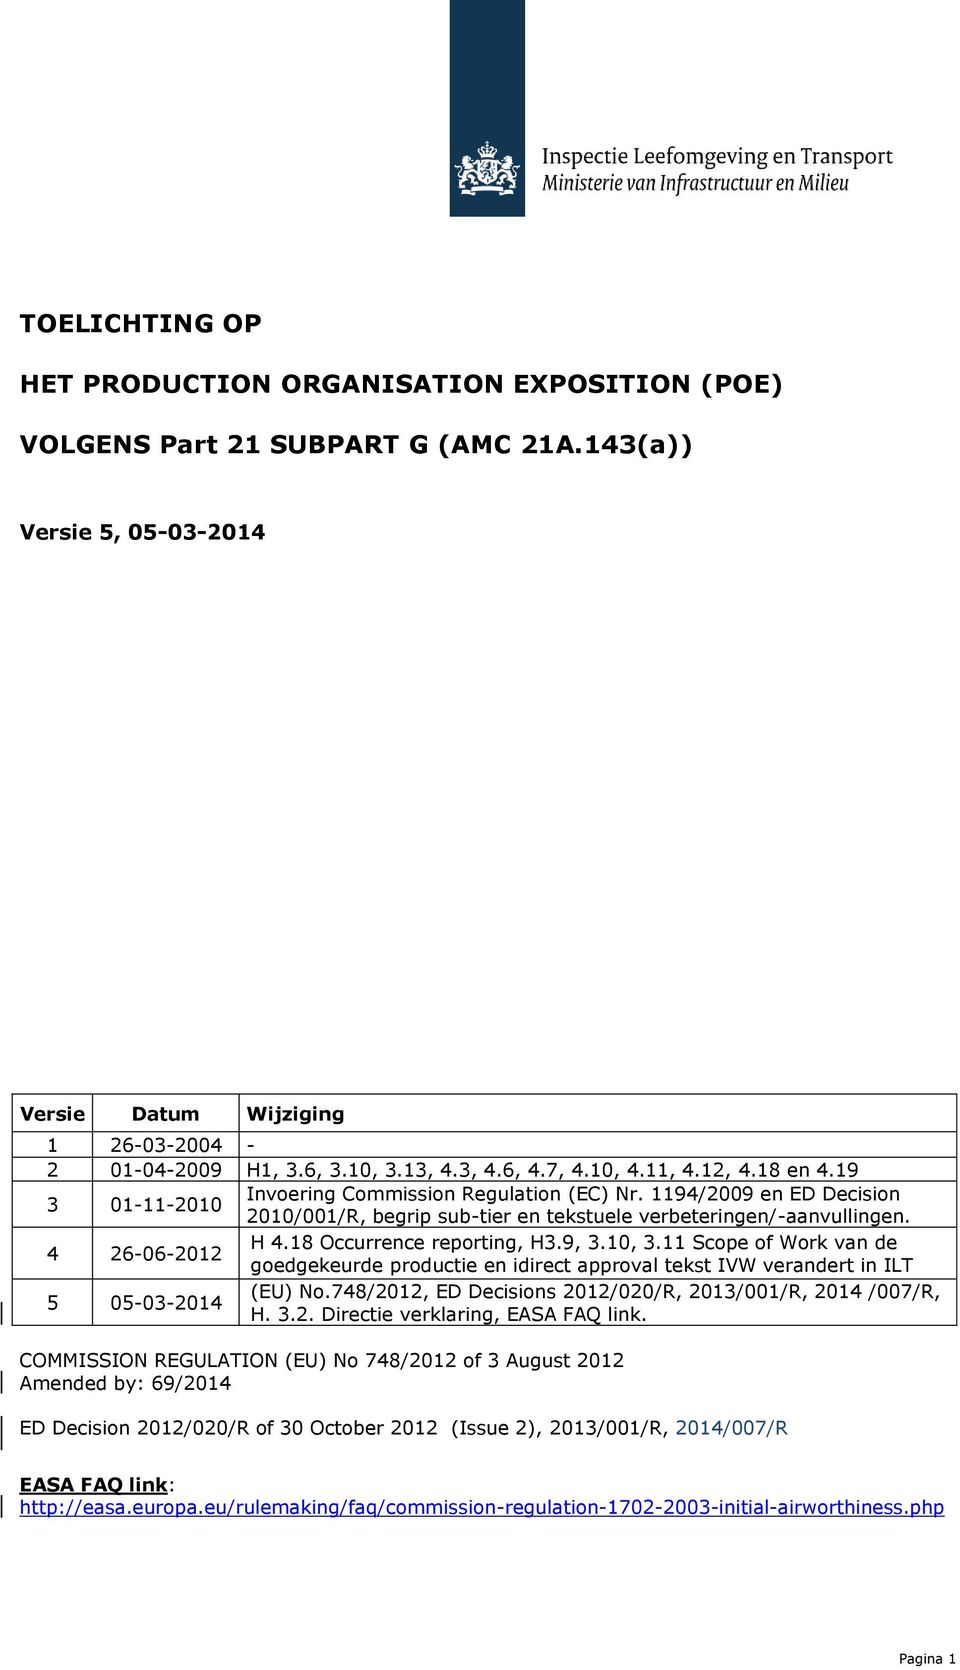 4 26-06-2012 H 4.18 Occurrence reporting, H3.9, 3.10, 3.11 Scope of Work van de goedgekeurde productie en idirect approval tekst IVW verandert in ILT 5 05-03-2014 (EU) No.